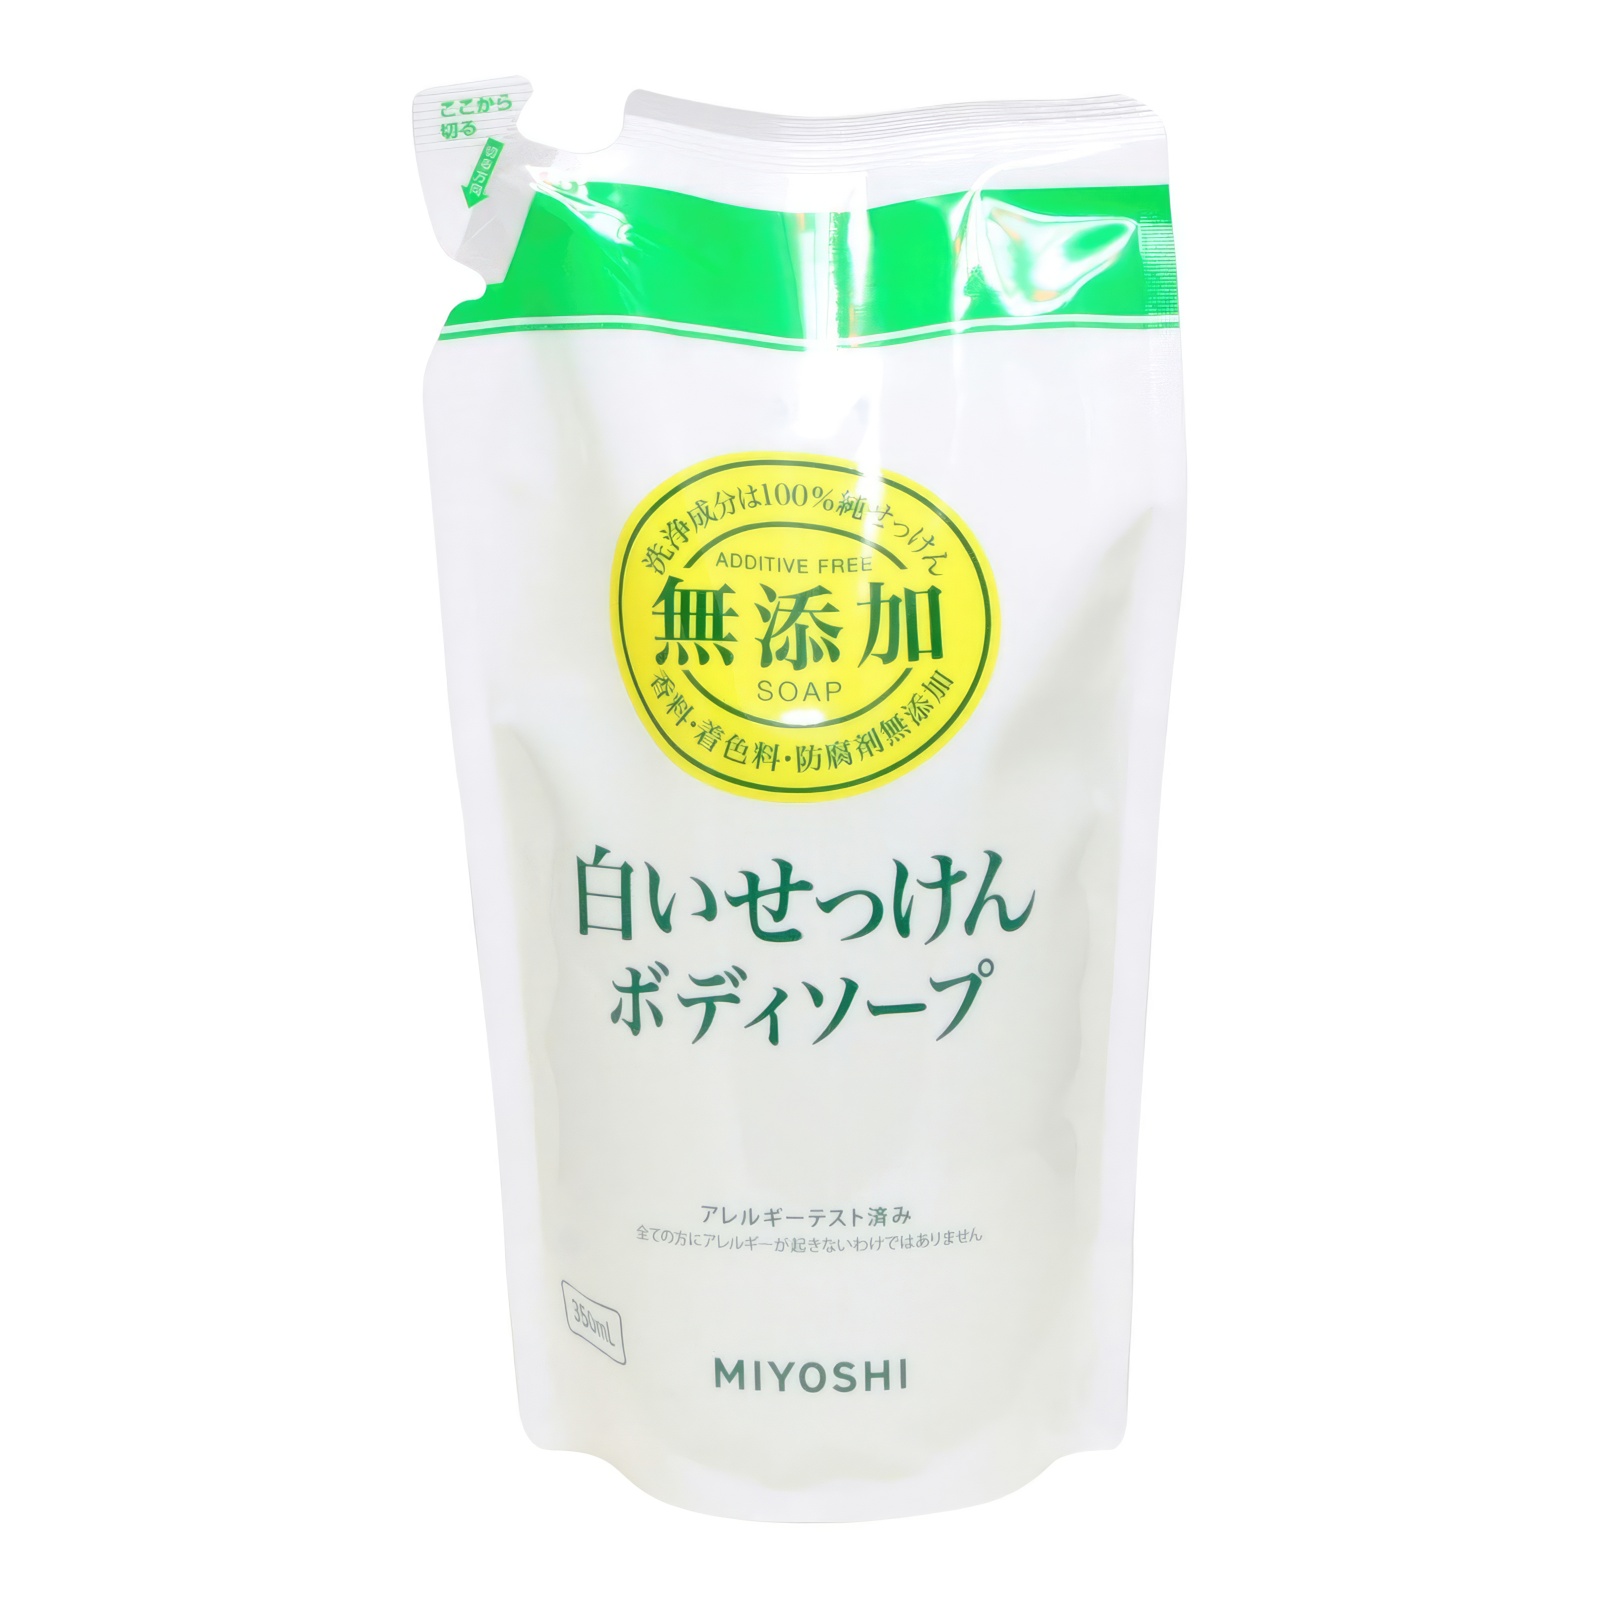 Натуральное жидкое мыло MIYOSHI эко для тела 350 мл з б солнце и луна eco жидкое мыло для детей 0 2000